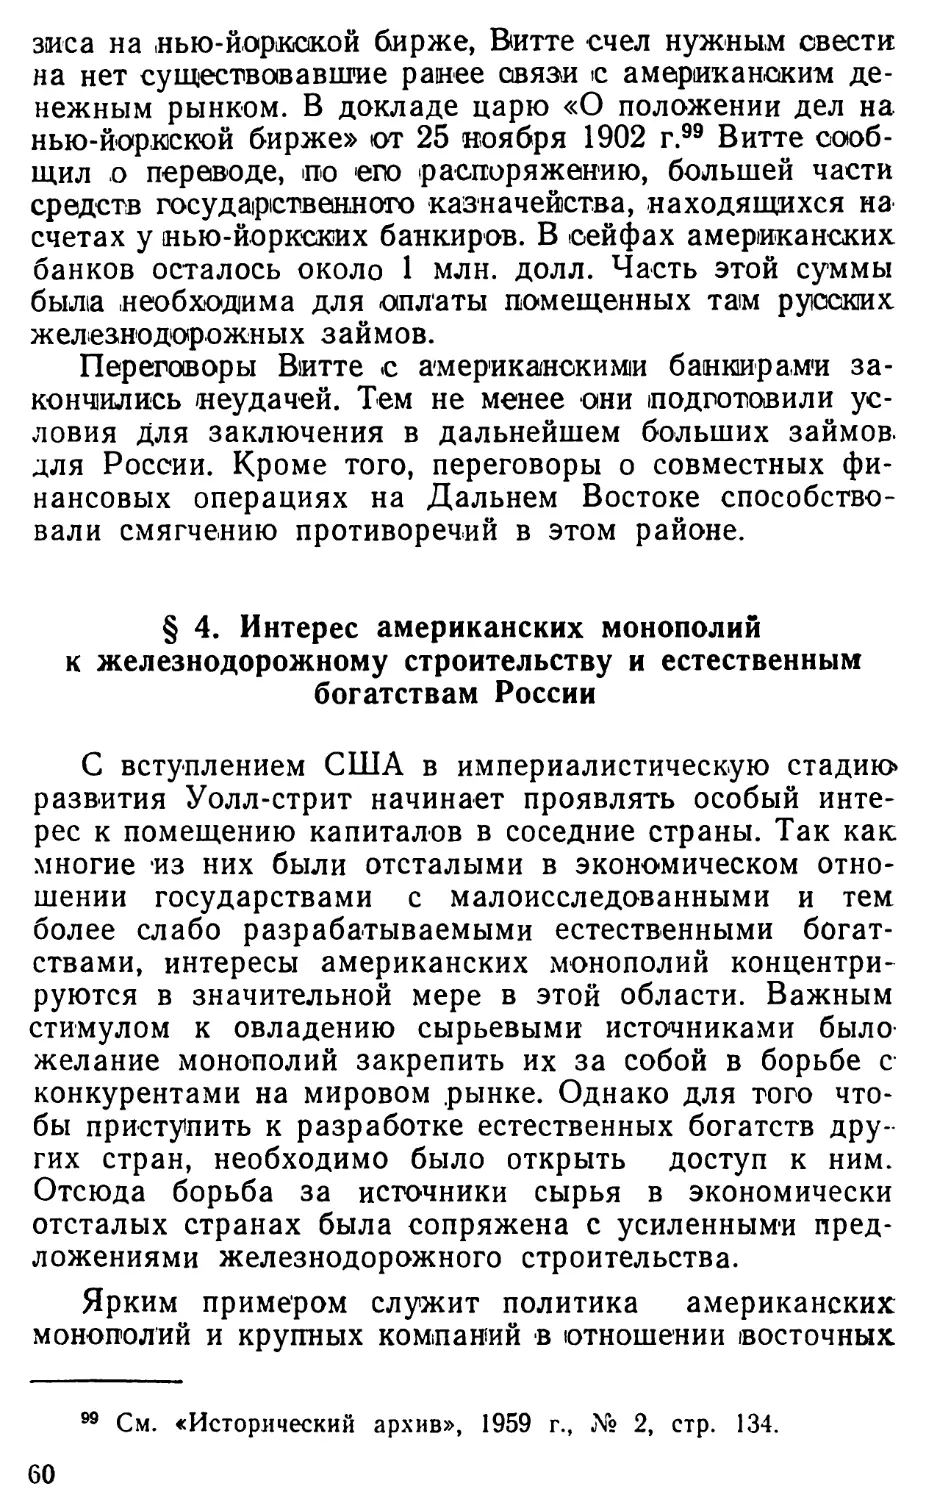 § 4. Интерес американских монополий к железнодорожному строительству и естественным богатствам России